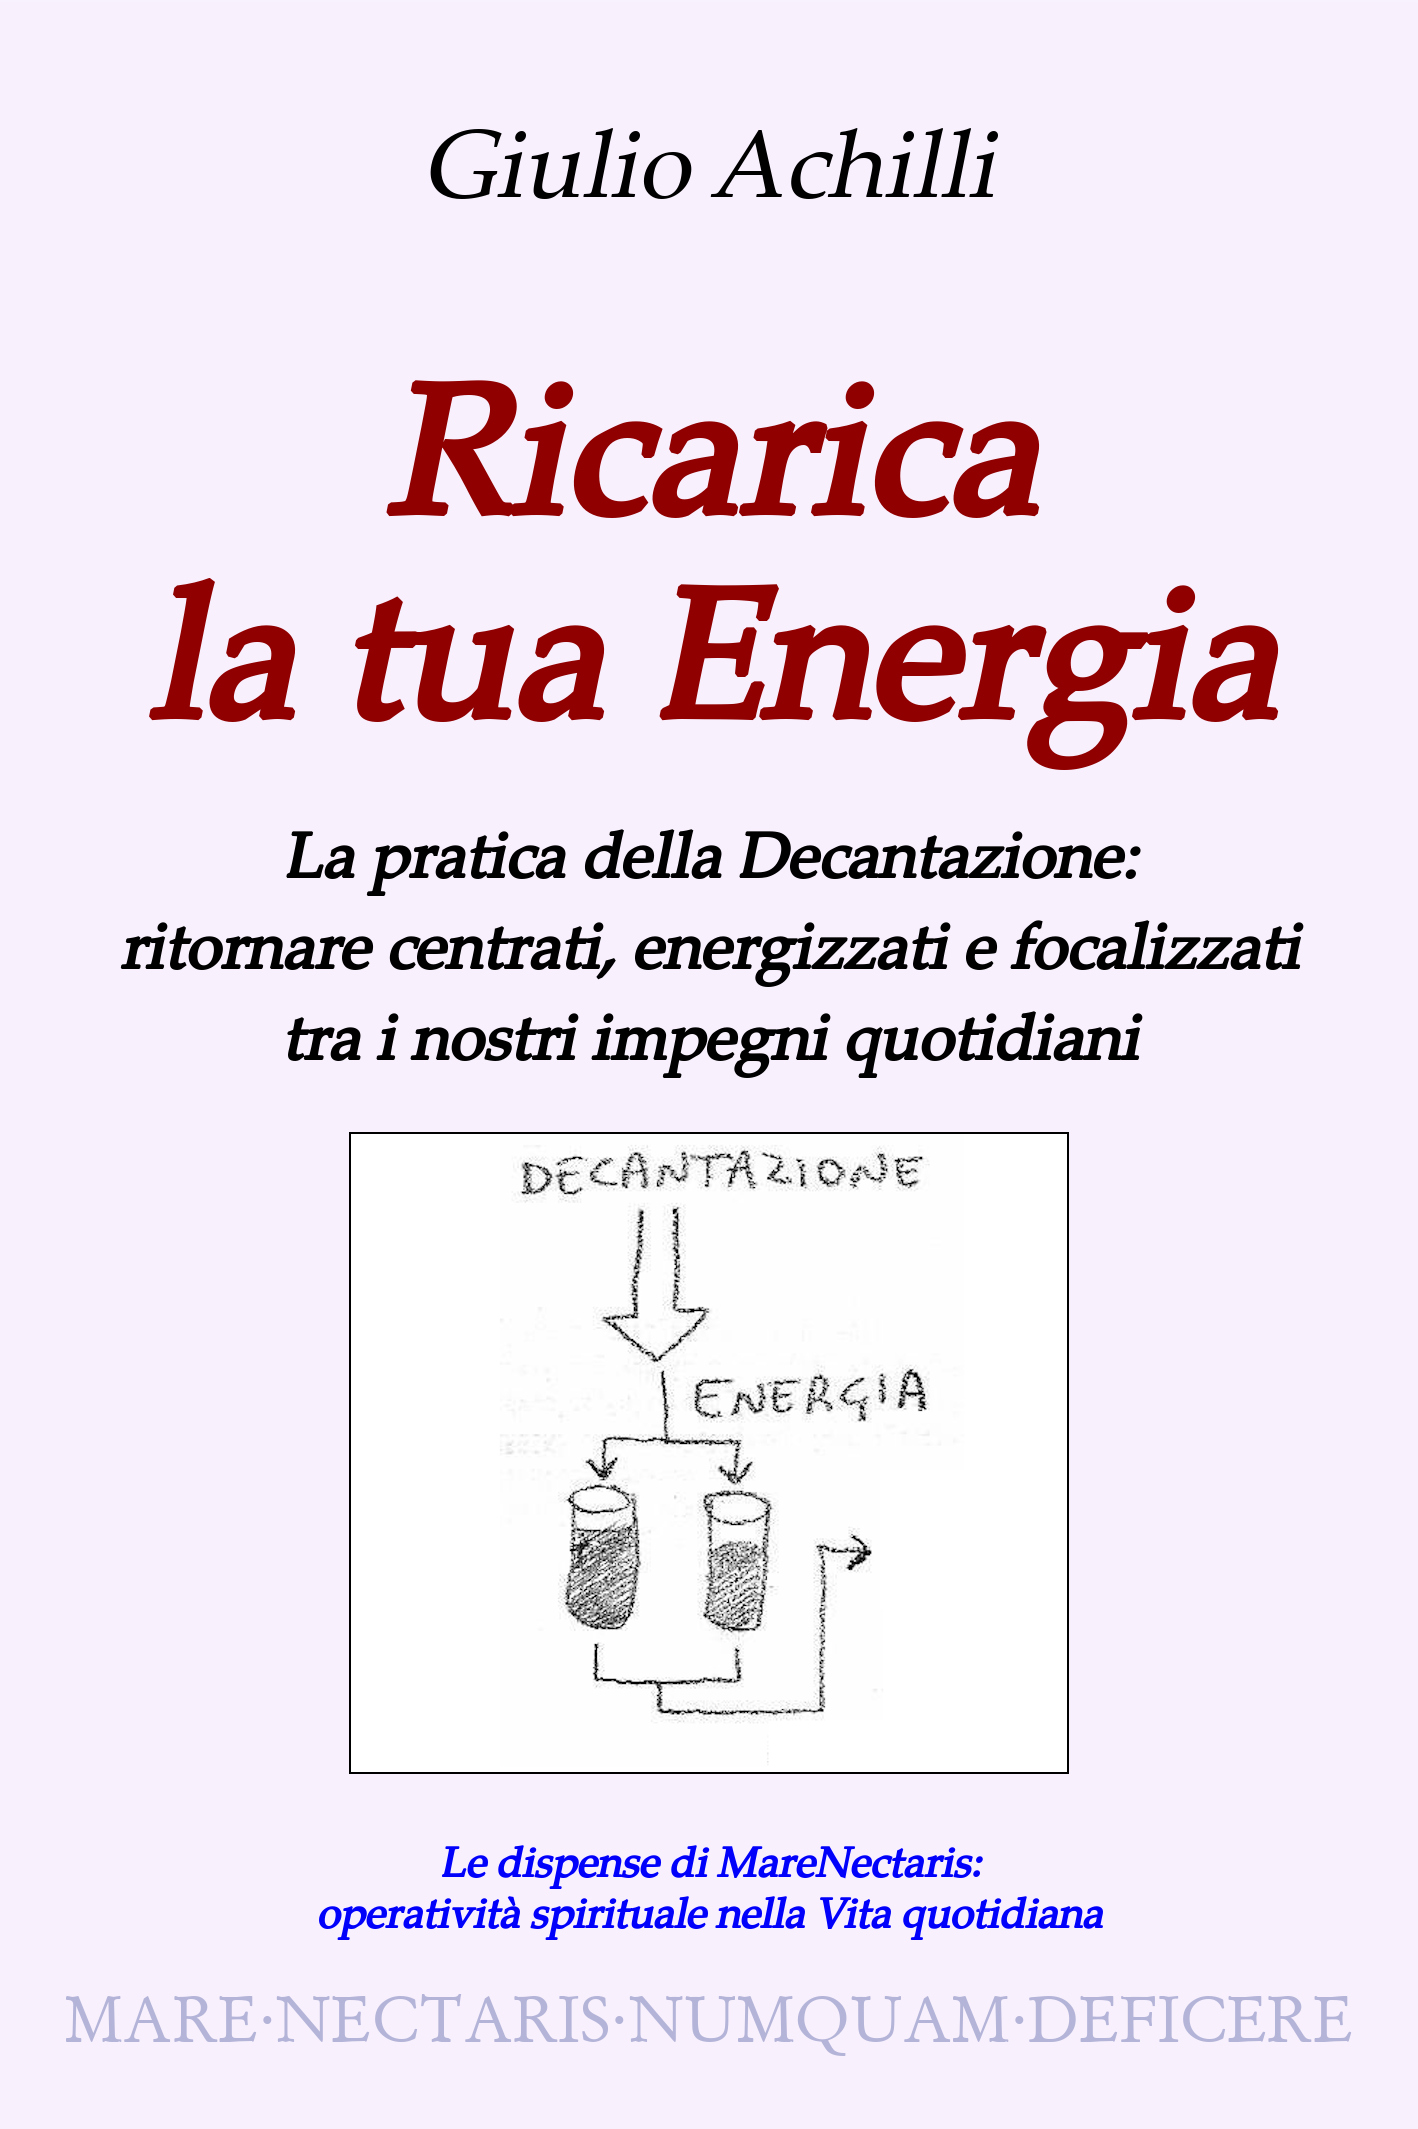 Ricarica la tua Energia - un libro di Giulio Achilli